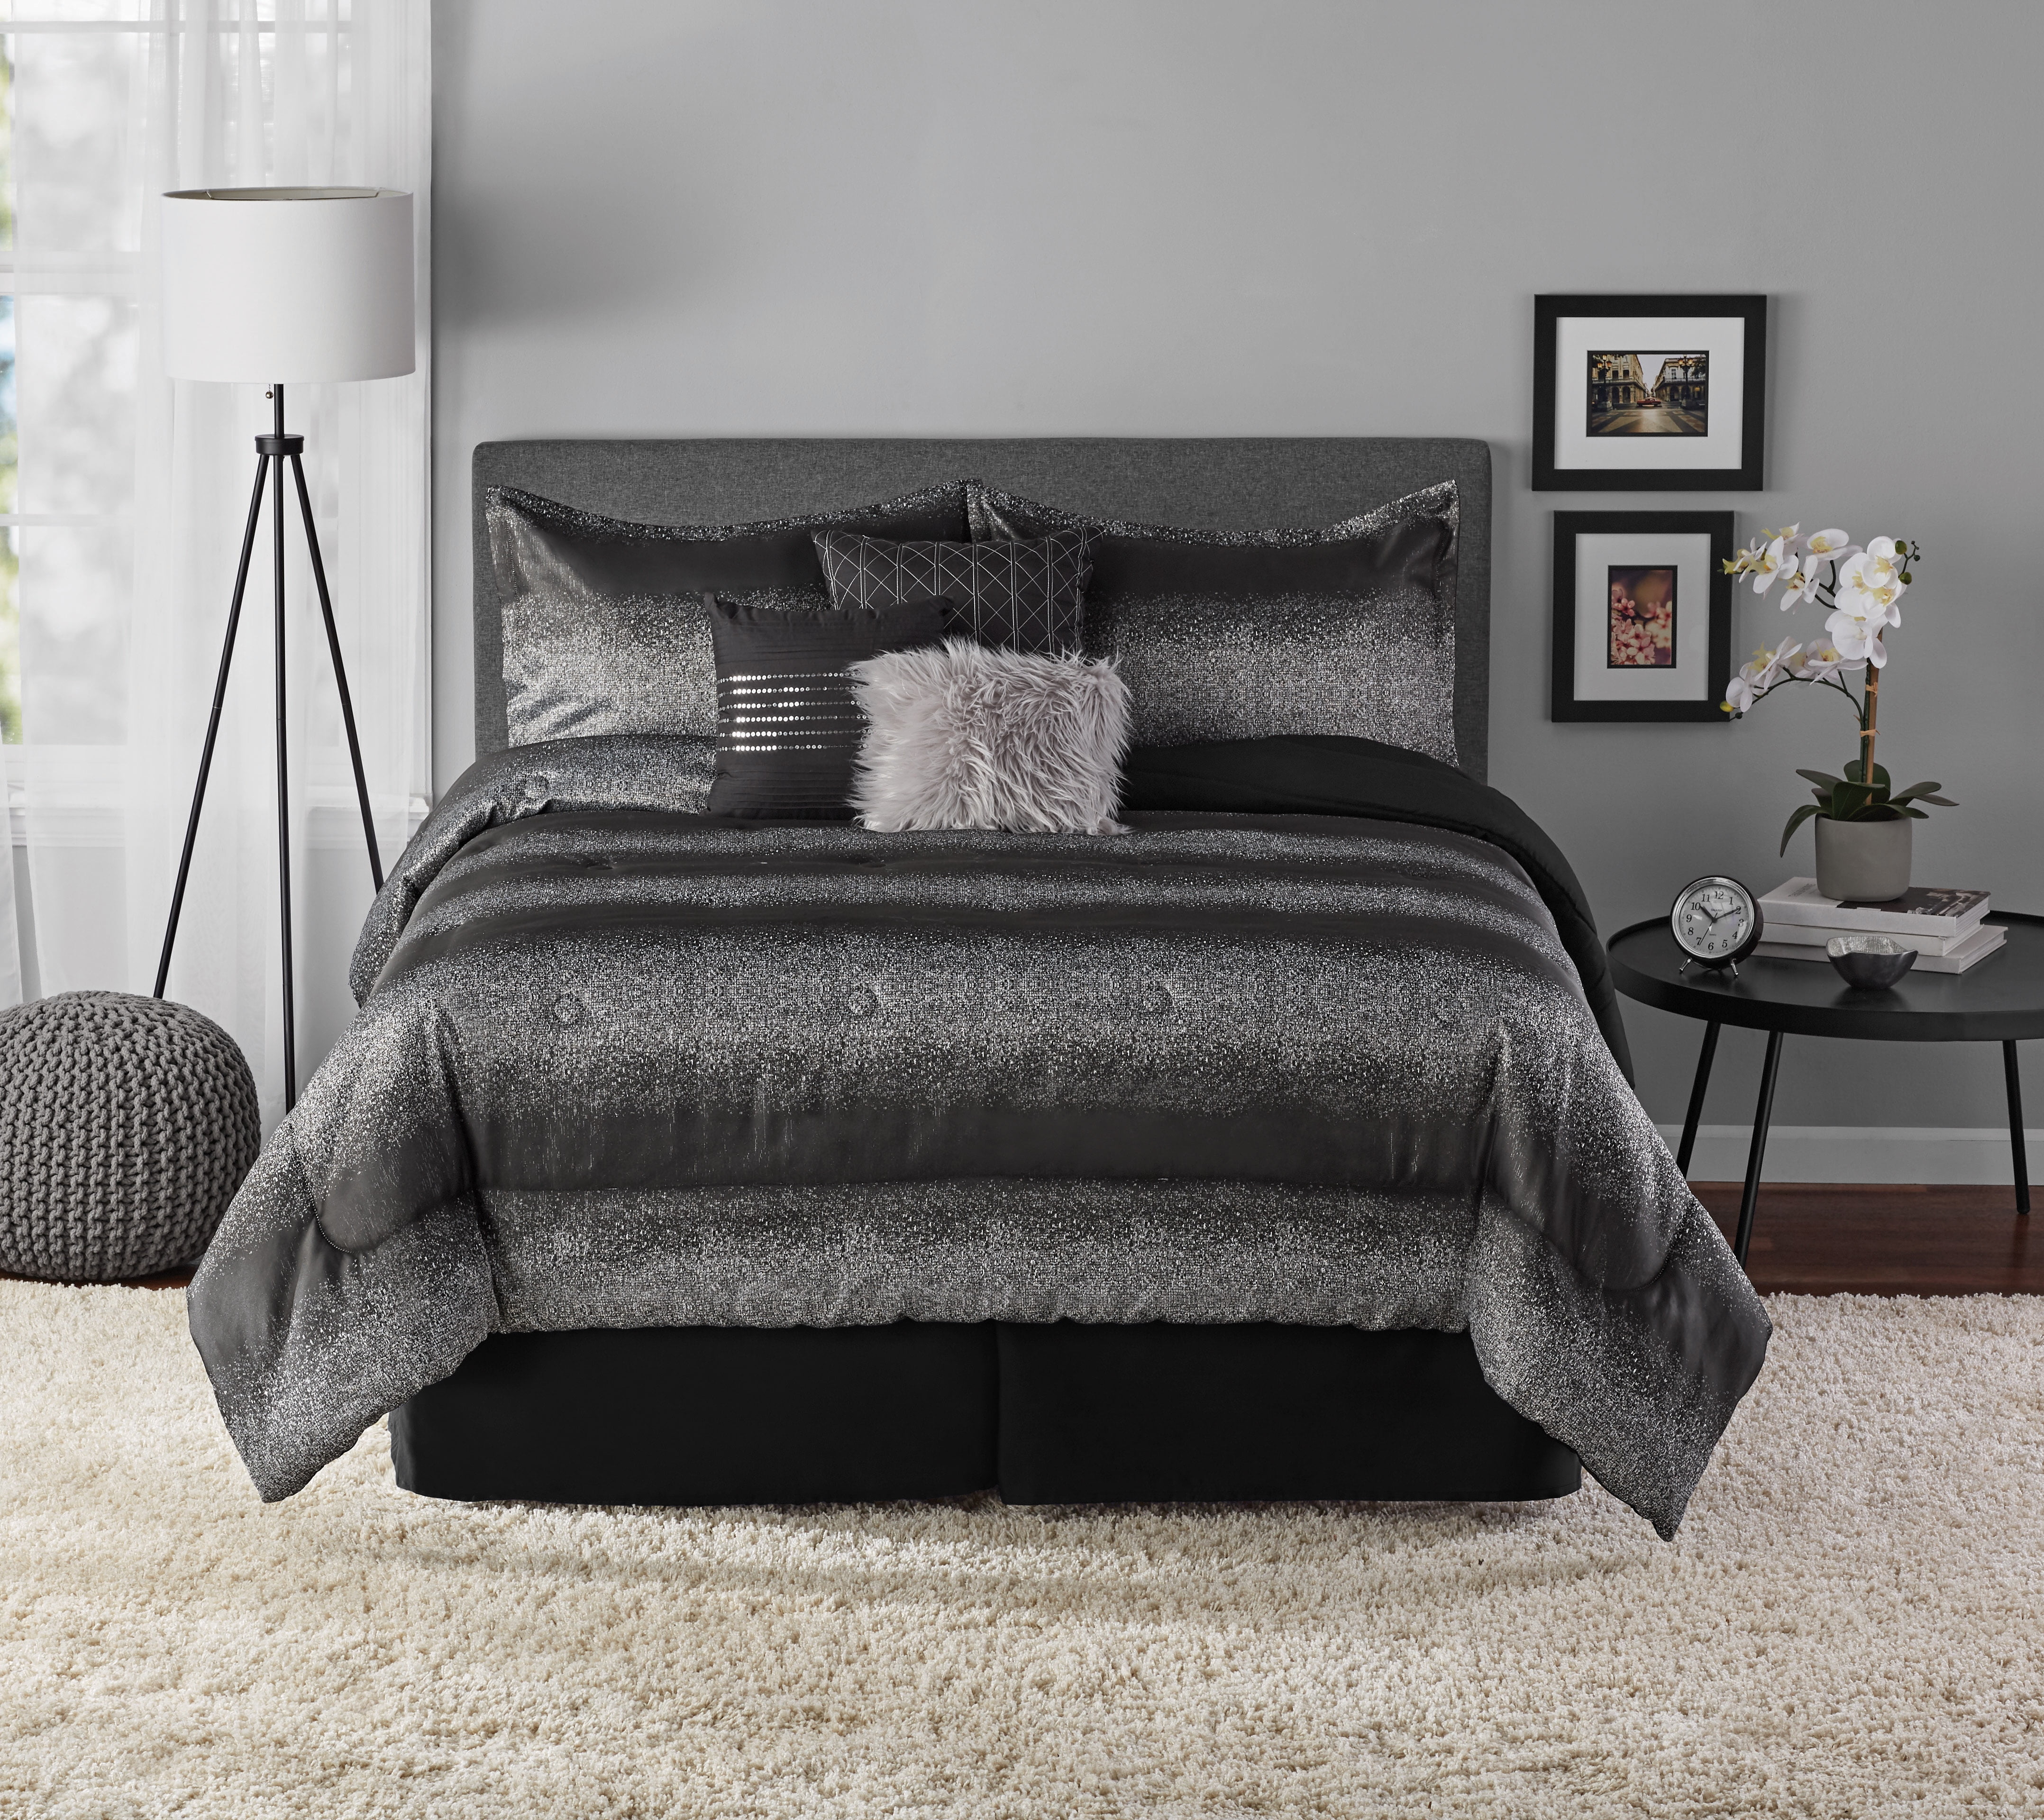 Classic Stripes Luxury Woven Jacquard 100% Pure Cotton Bed Linen Duvet Cover Set 